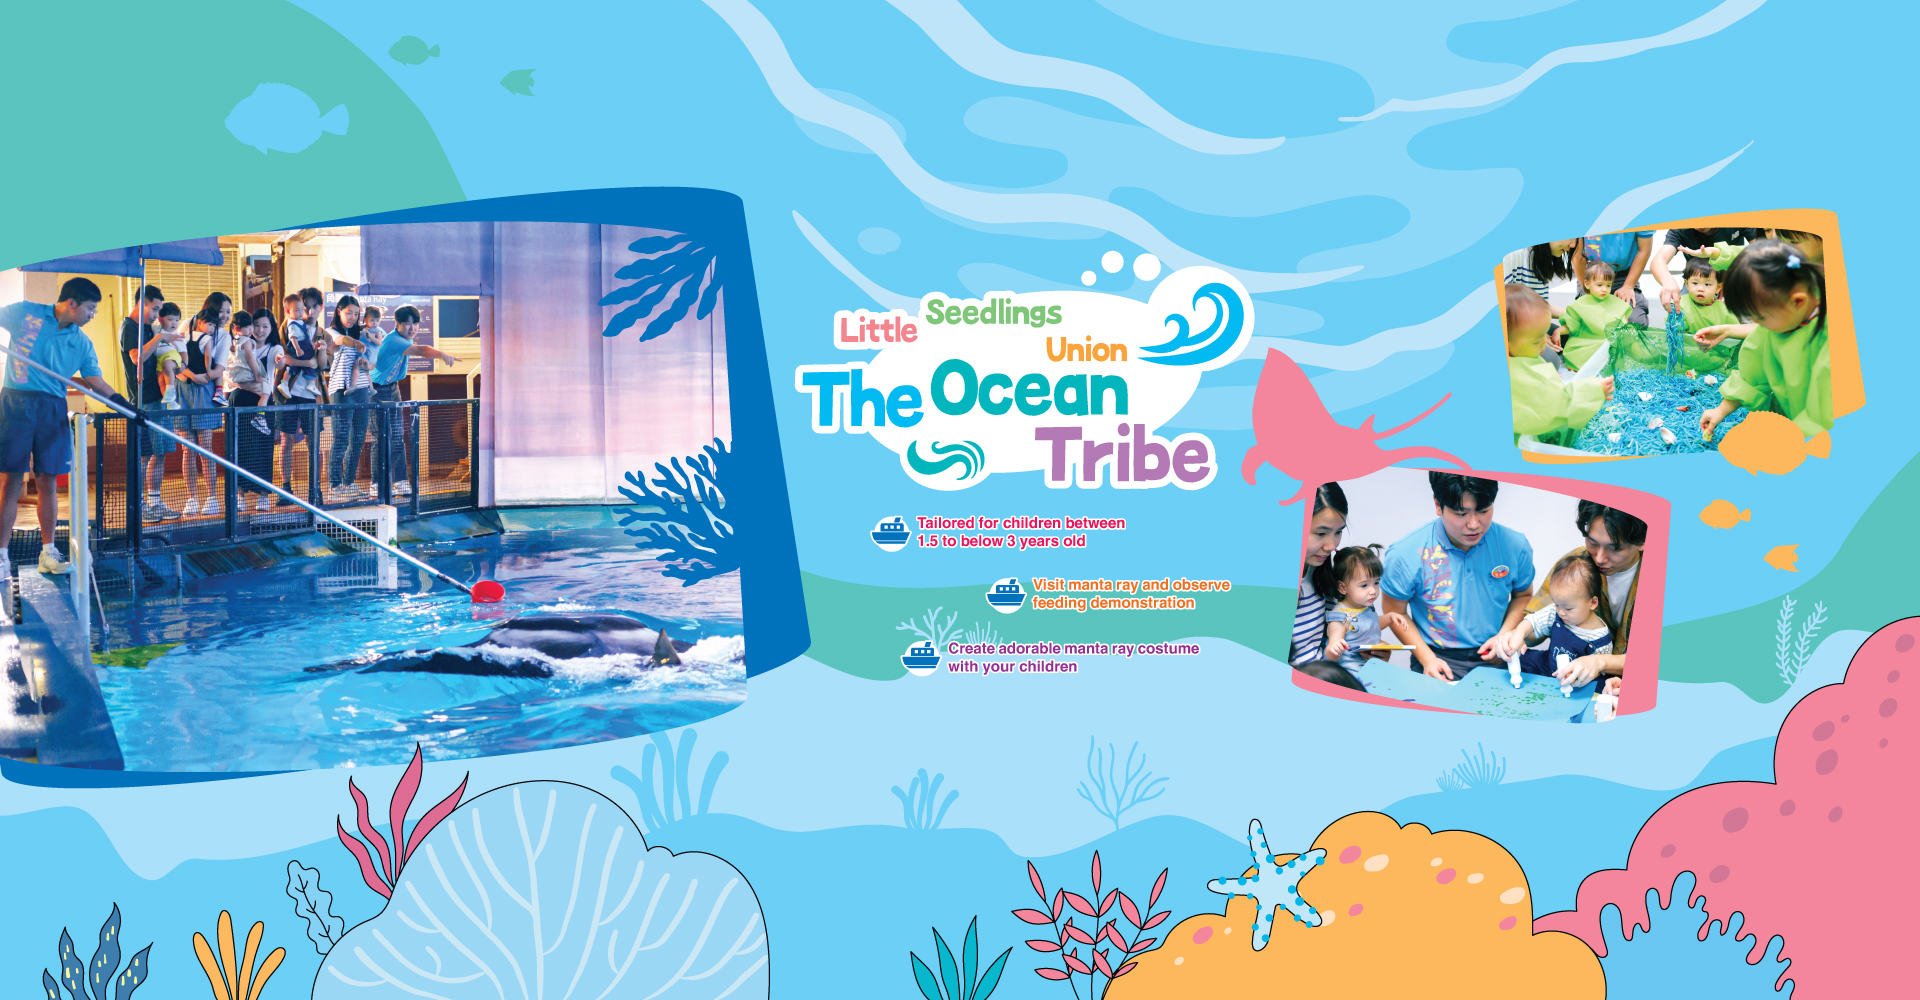 https://media.oceanpark.cn/files/s3fs-public/op-little-seedlings-union-the-ocean-tribe-innerpage-desktop-en.jpg